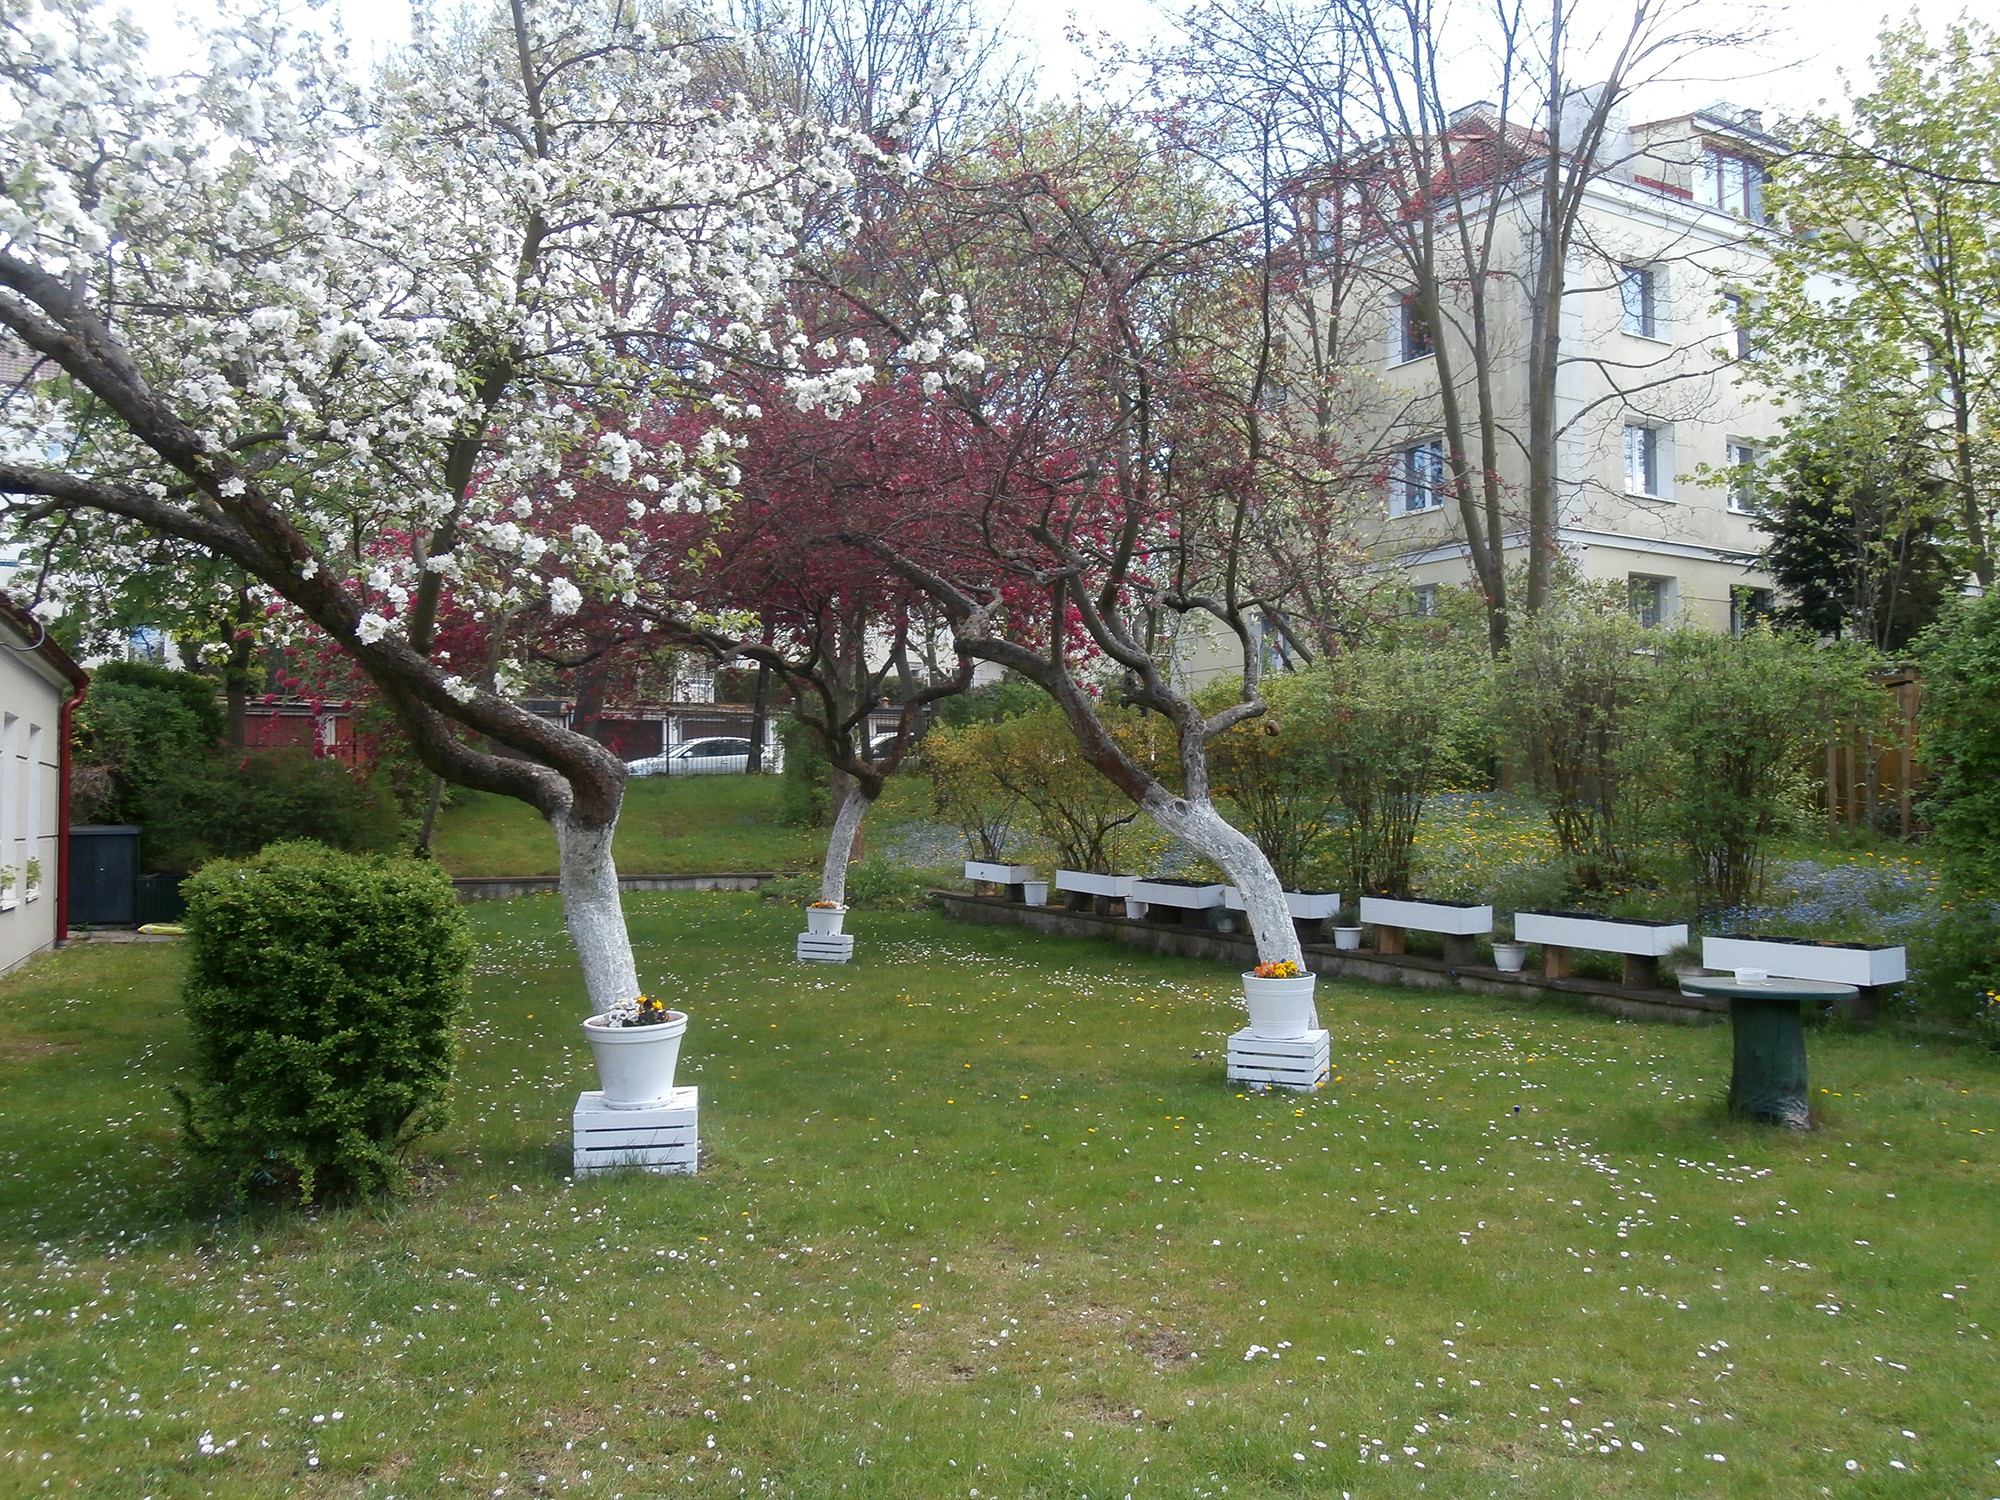 Ogród przy Dziennym Domu Pomocy Społecznej, w którym przeważają drzewa owocowe, niezapominajki i piwonie